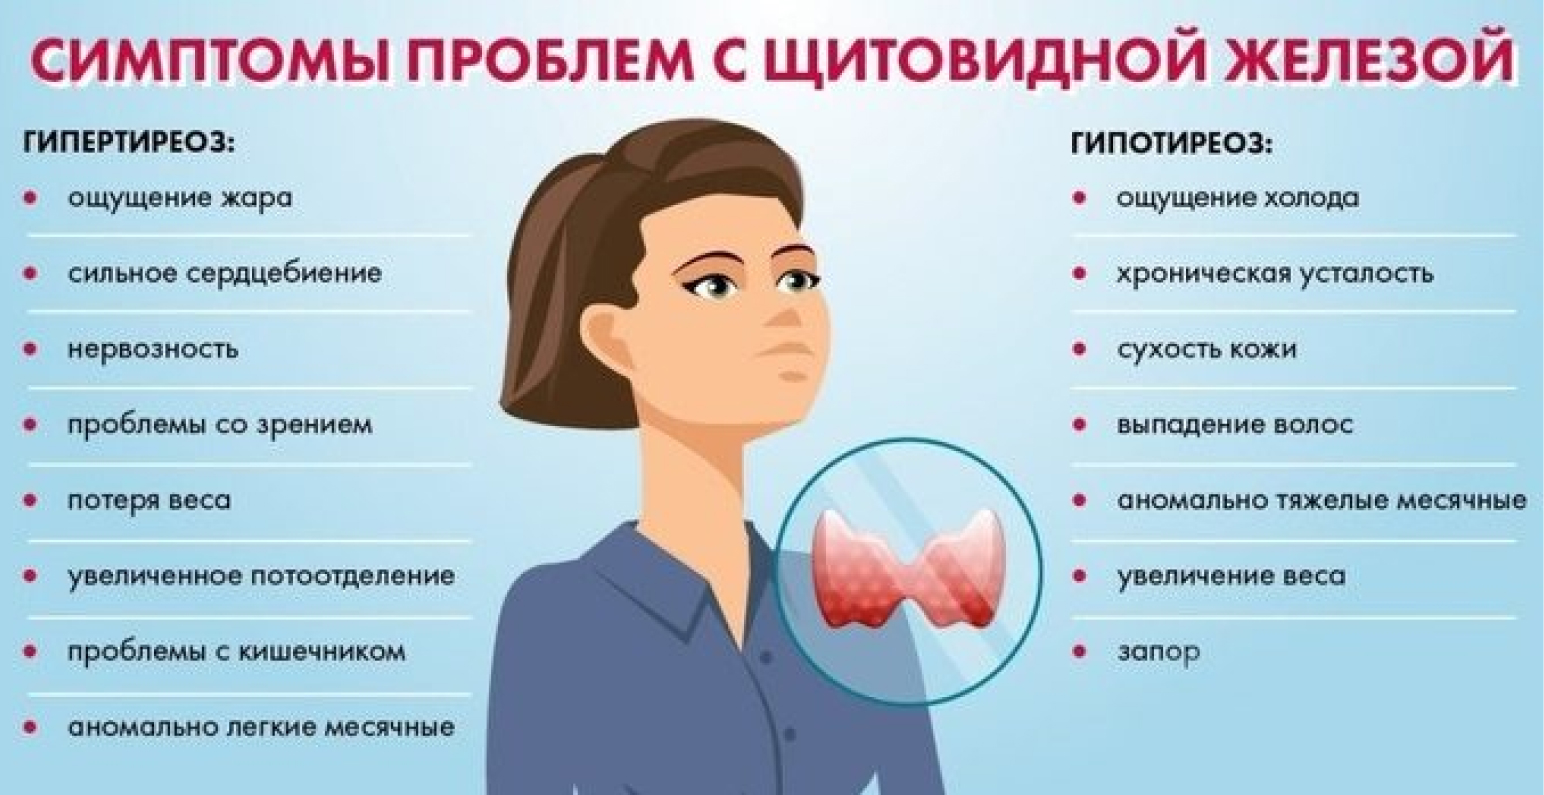 Симптомы проблем с щитовидной железой